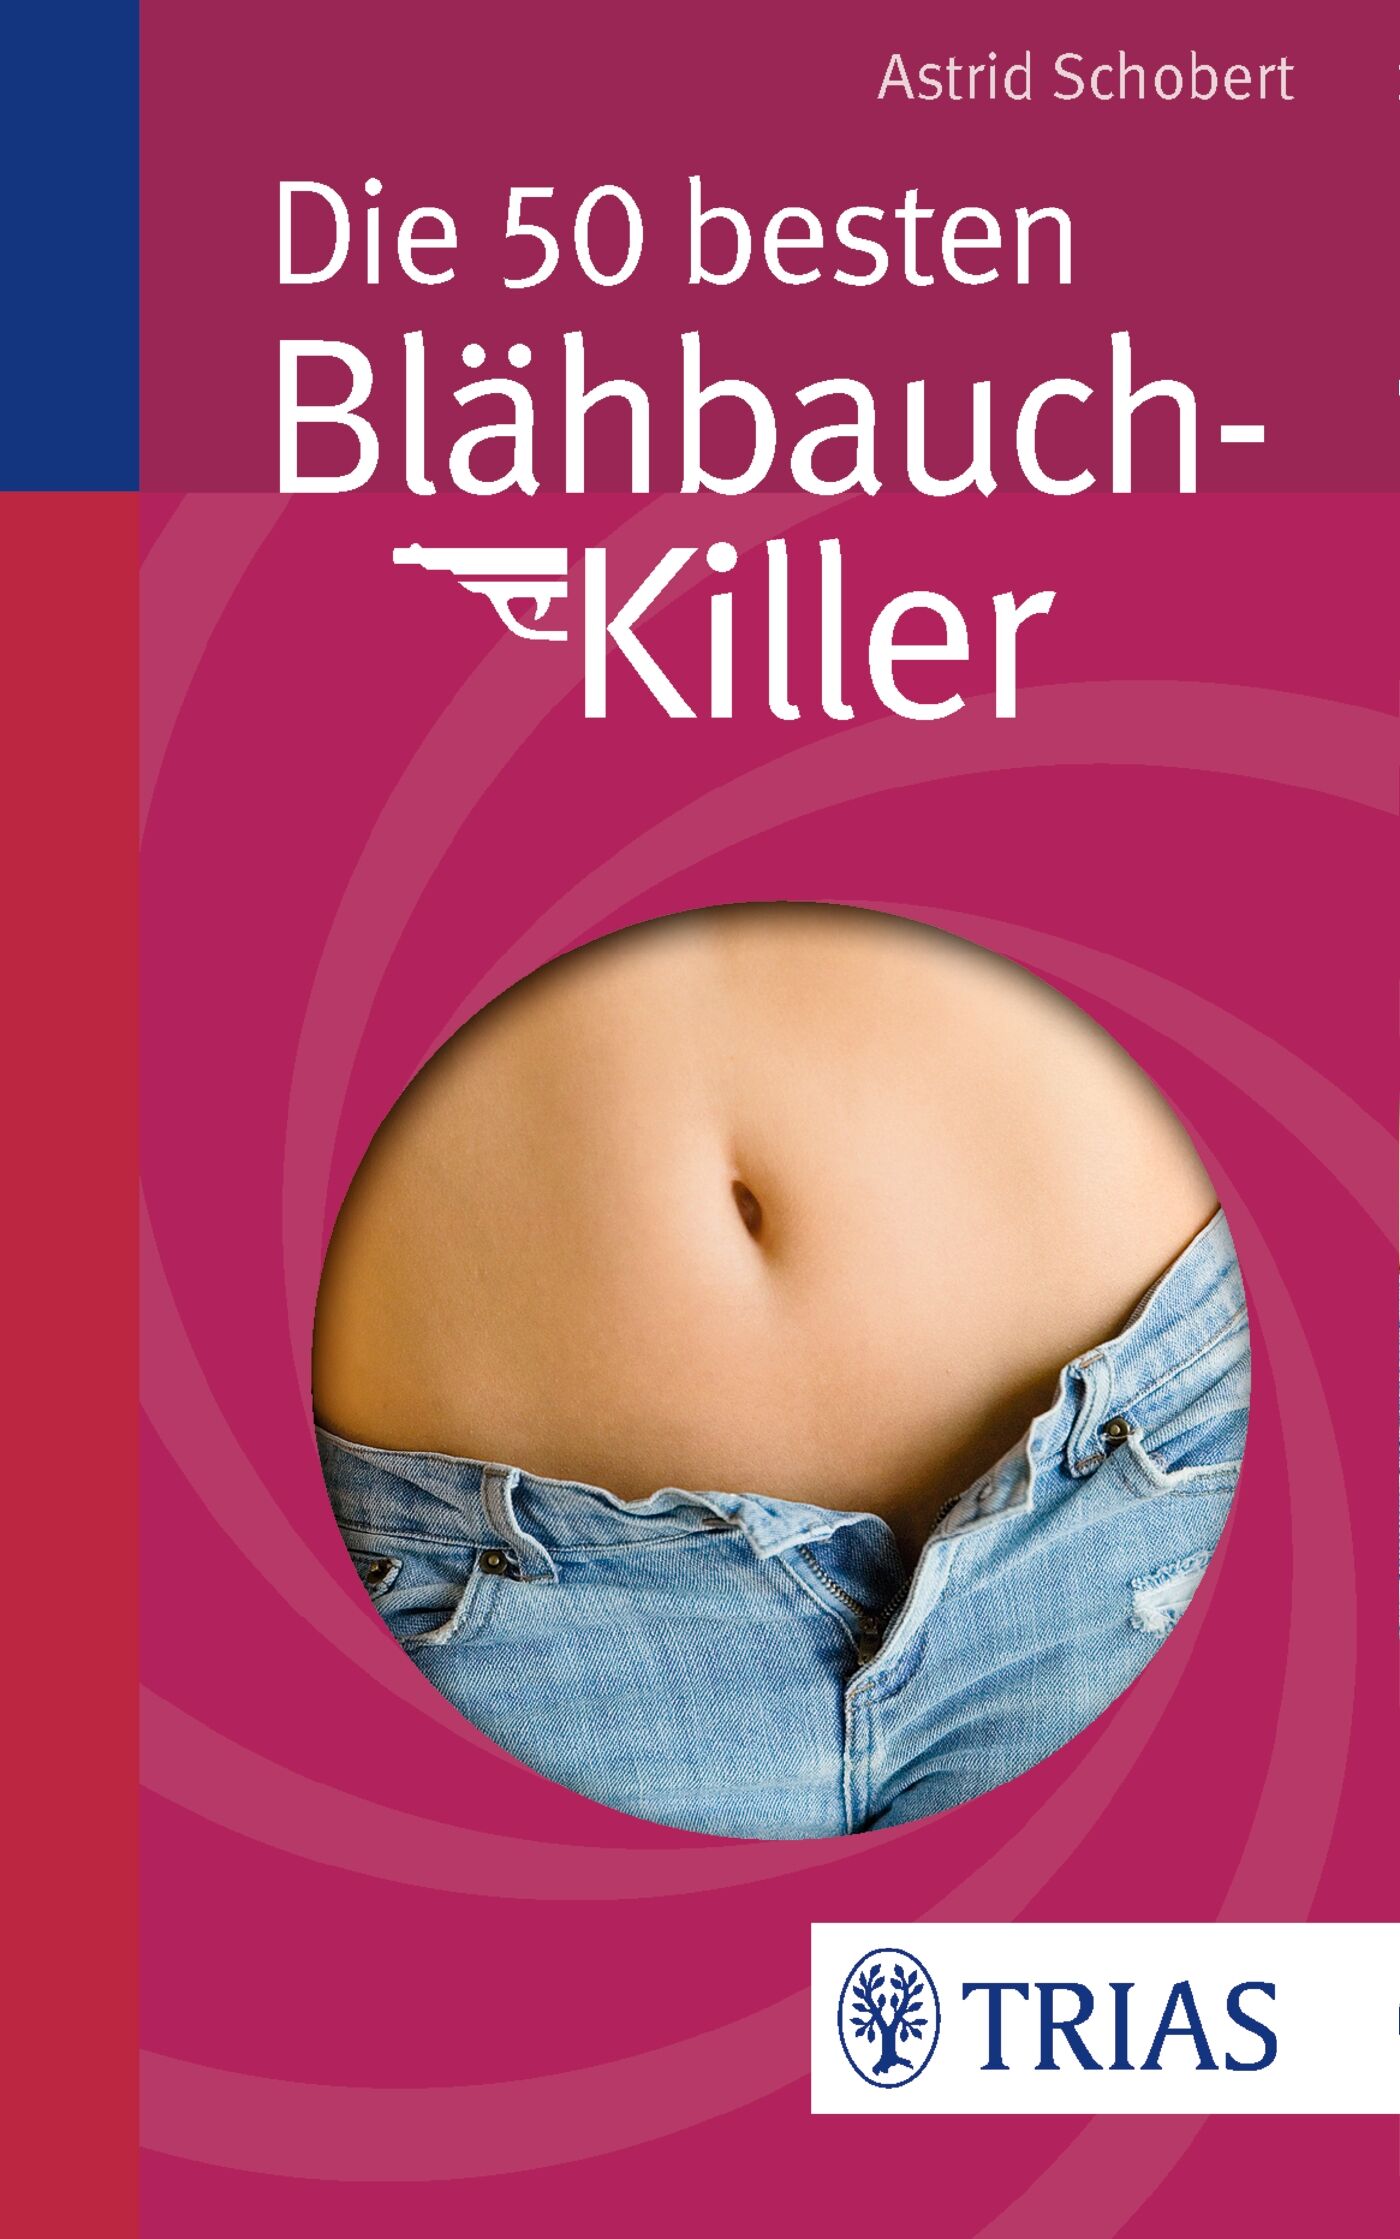 Die 50 besten Blähbauch-Killer, 9783830481379